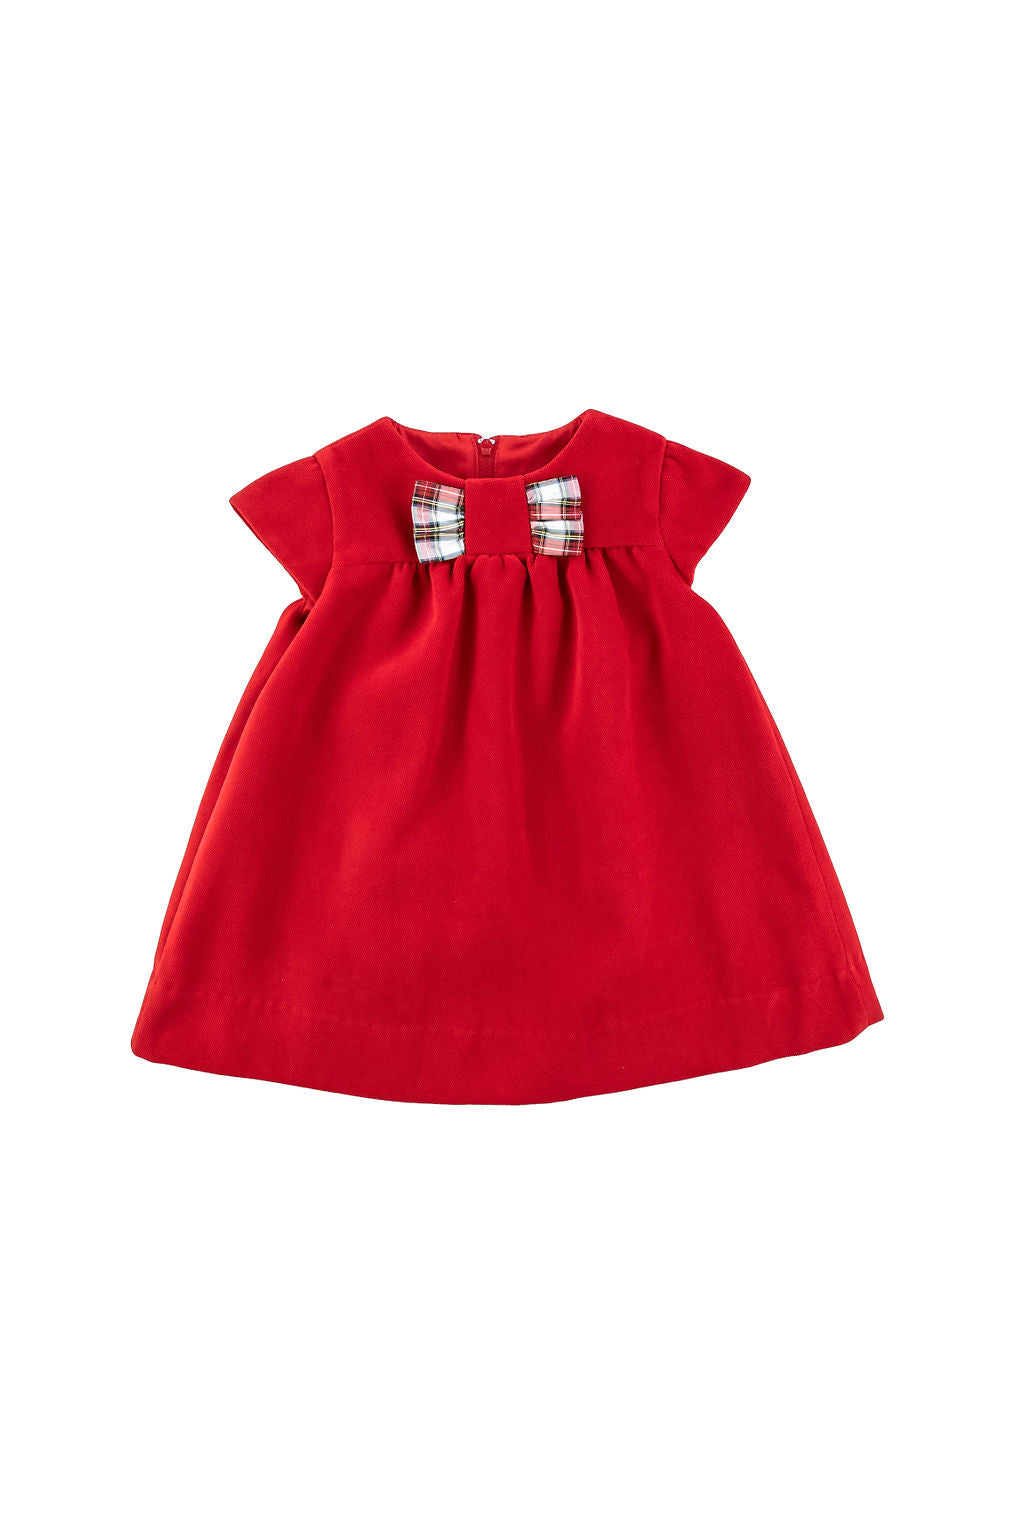 Florence Eiseman infant girl velvet dress with taffeta bow